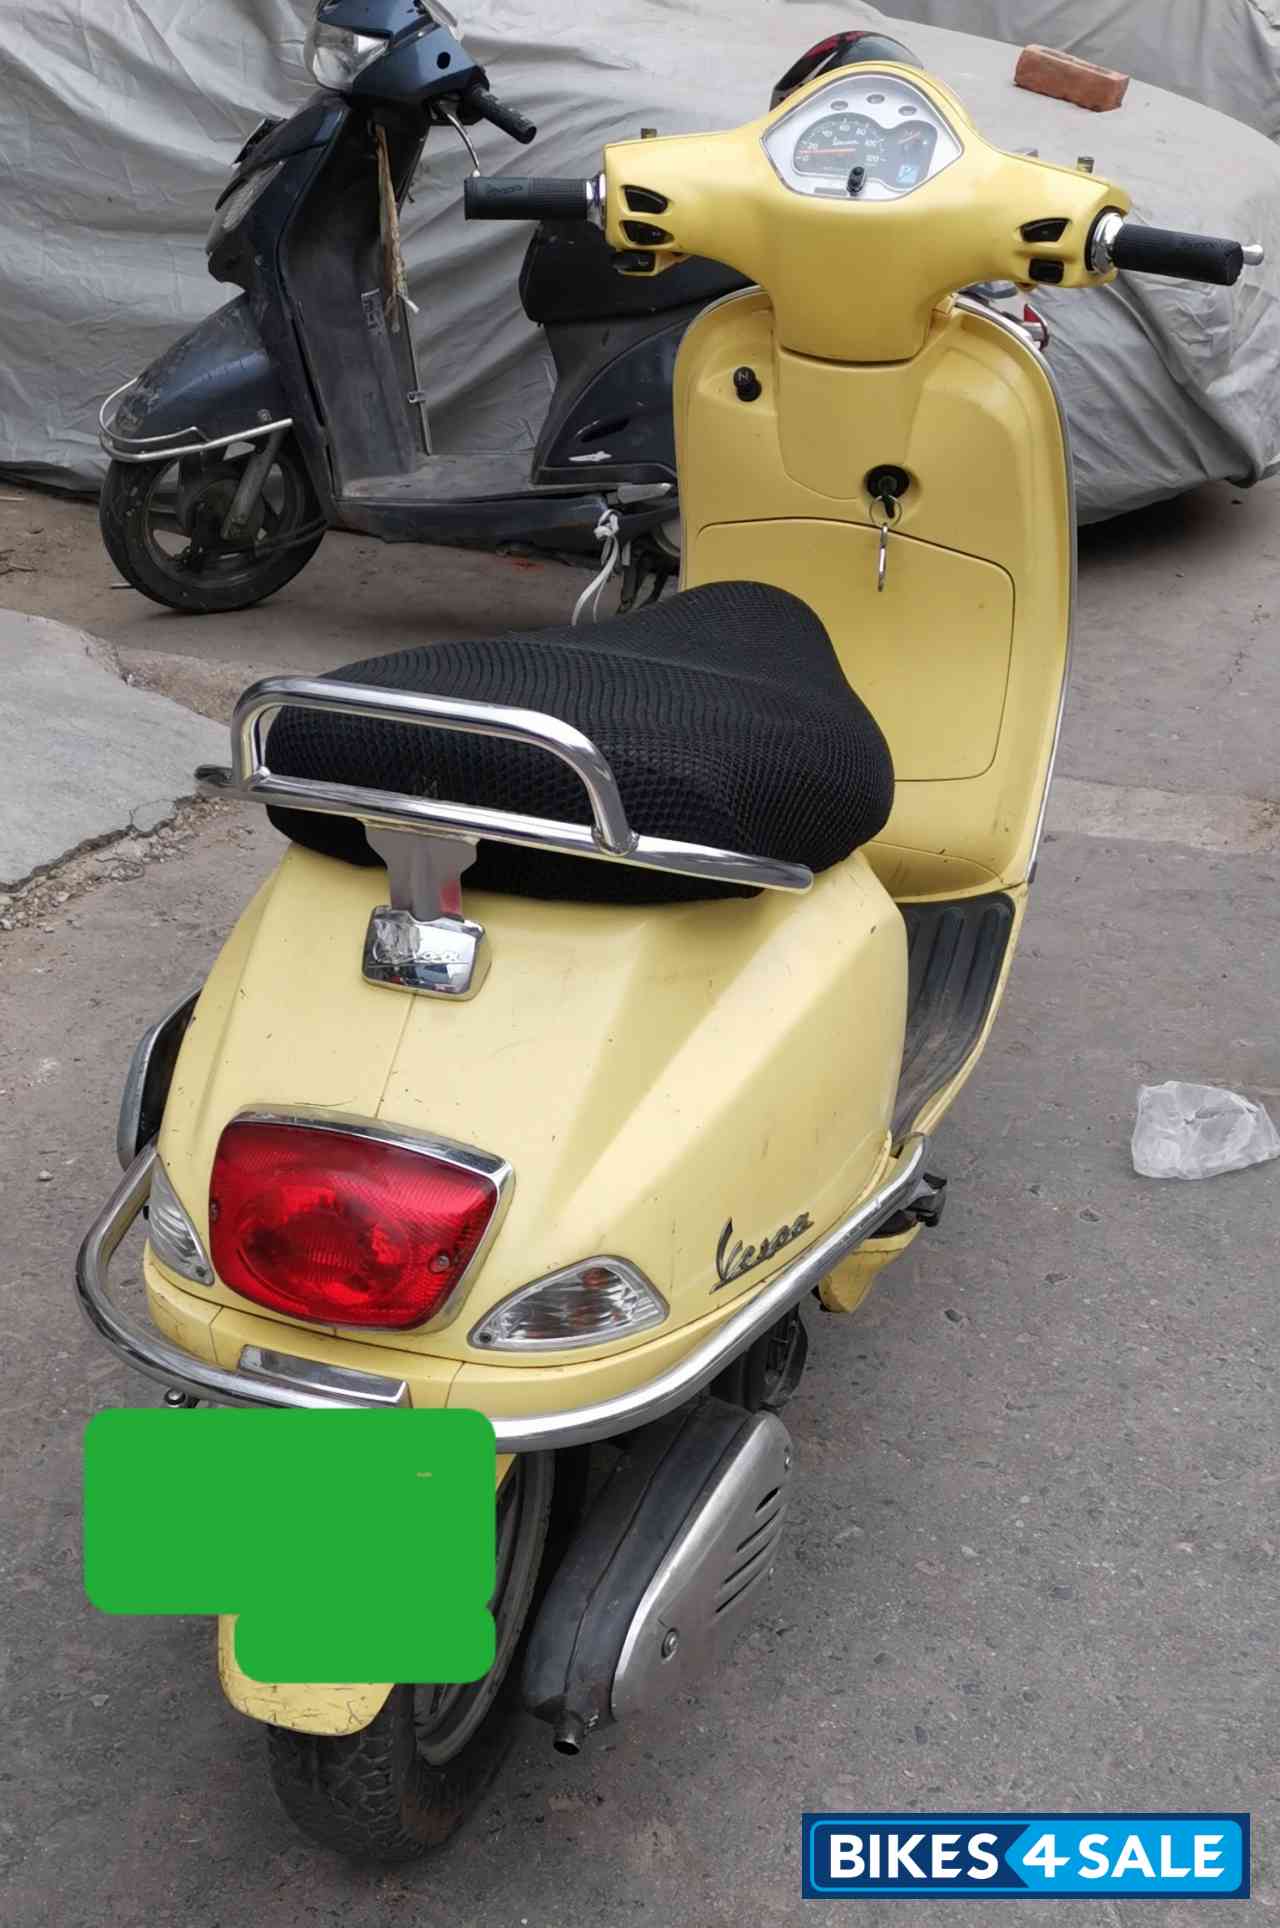 Used 2012 model Vespa LX 125 for sale in New Delhi. ID 271990 - Bikes4Sale